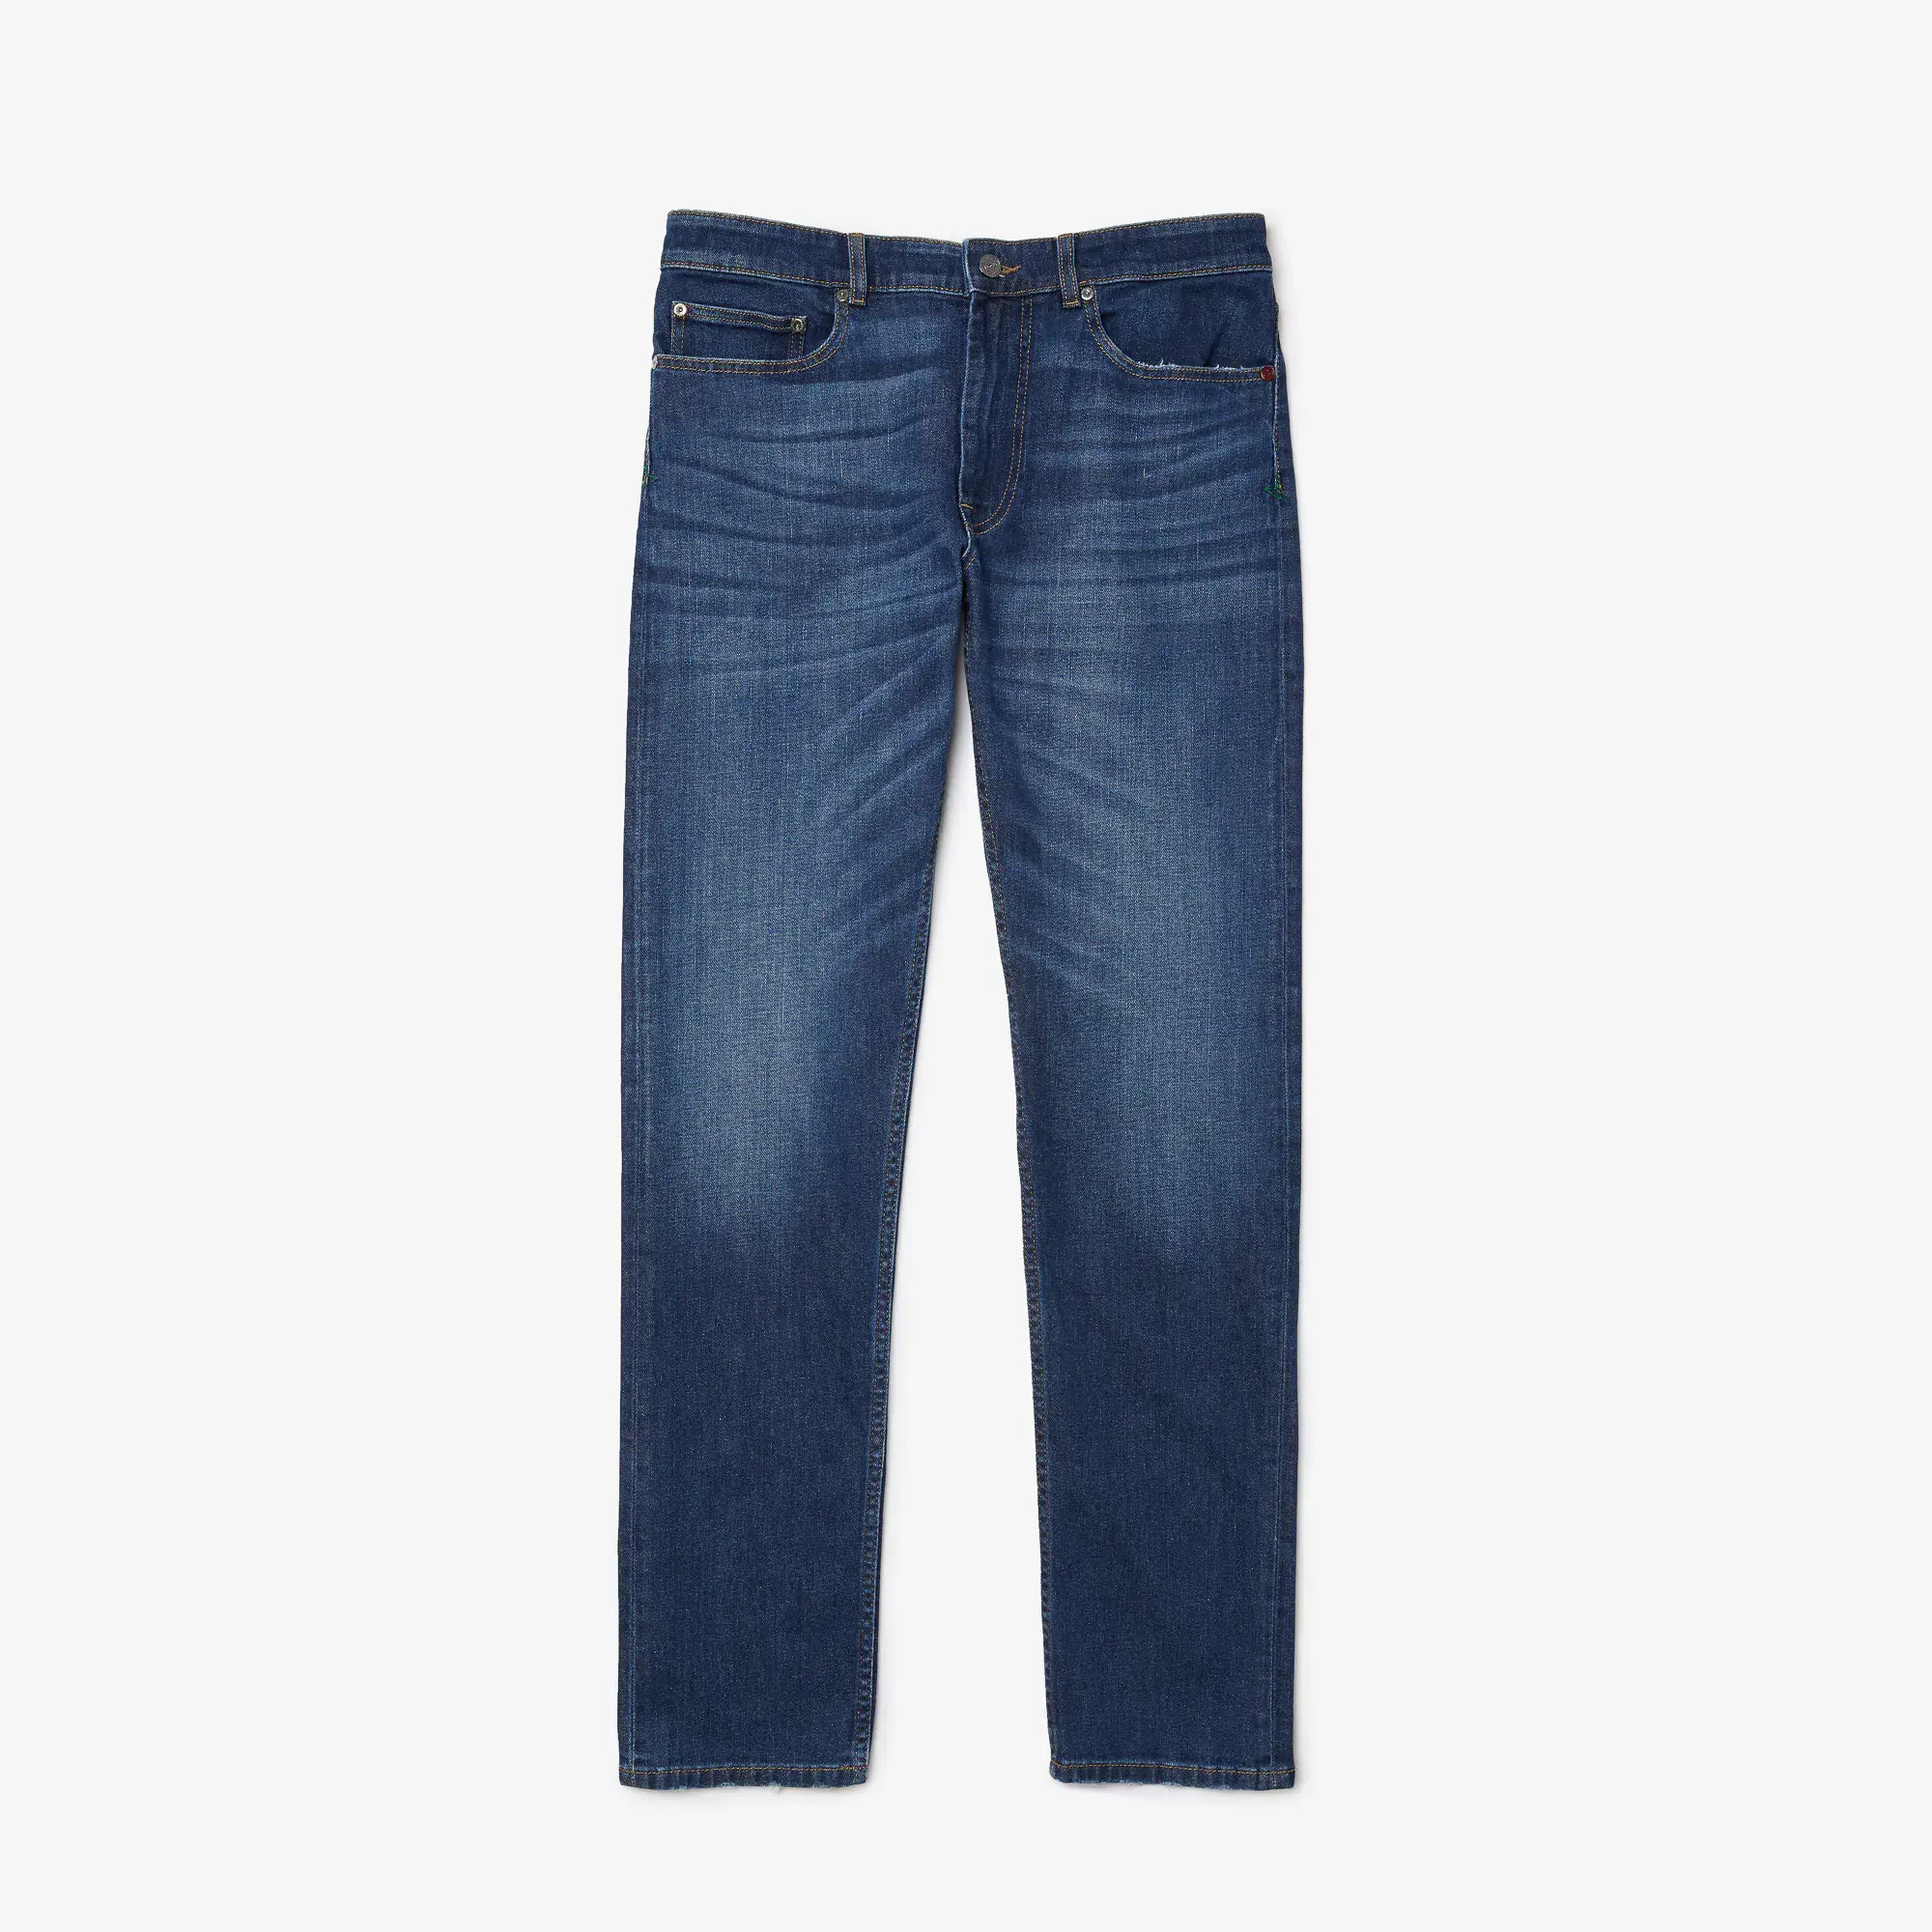 Lacoste Men's Slim Fit Stretch Cotton Denim Jeans. 2